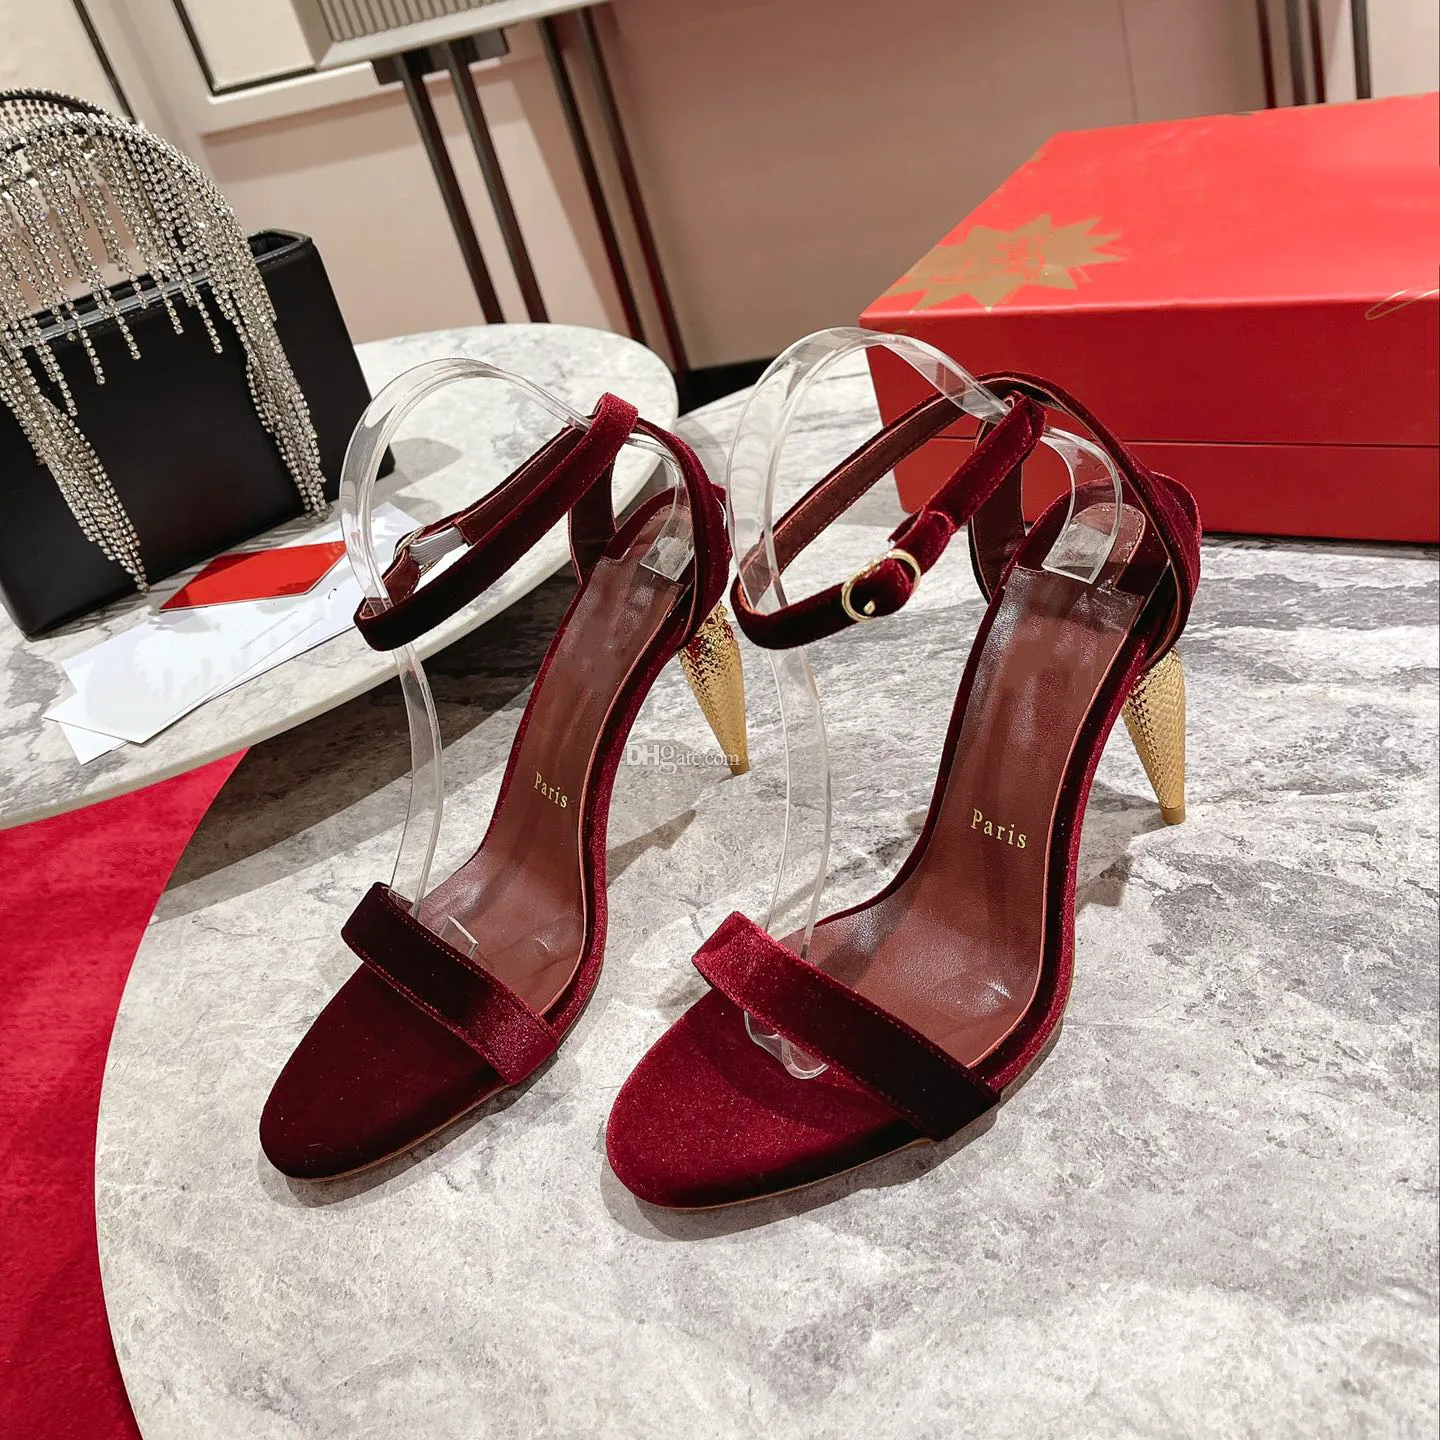 Diseñador de moda Alta calidad para mujer Tacón rojo Tacones altos Suela de cuero de lujo Cetro dorado Sandalias de diamantes 0-12 cm Vestido de fiesta de boda Zapatos de cena H2070